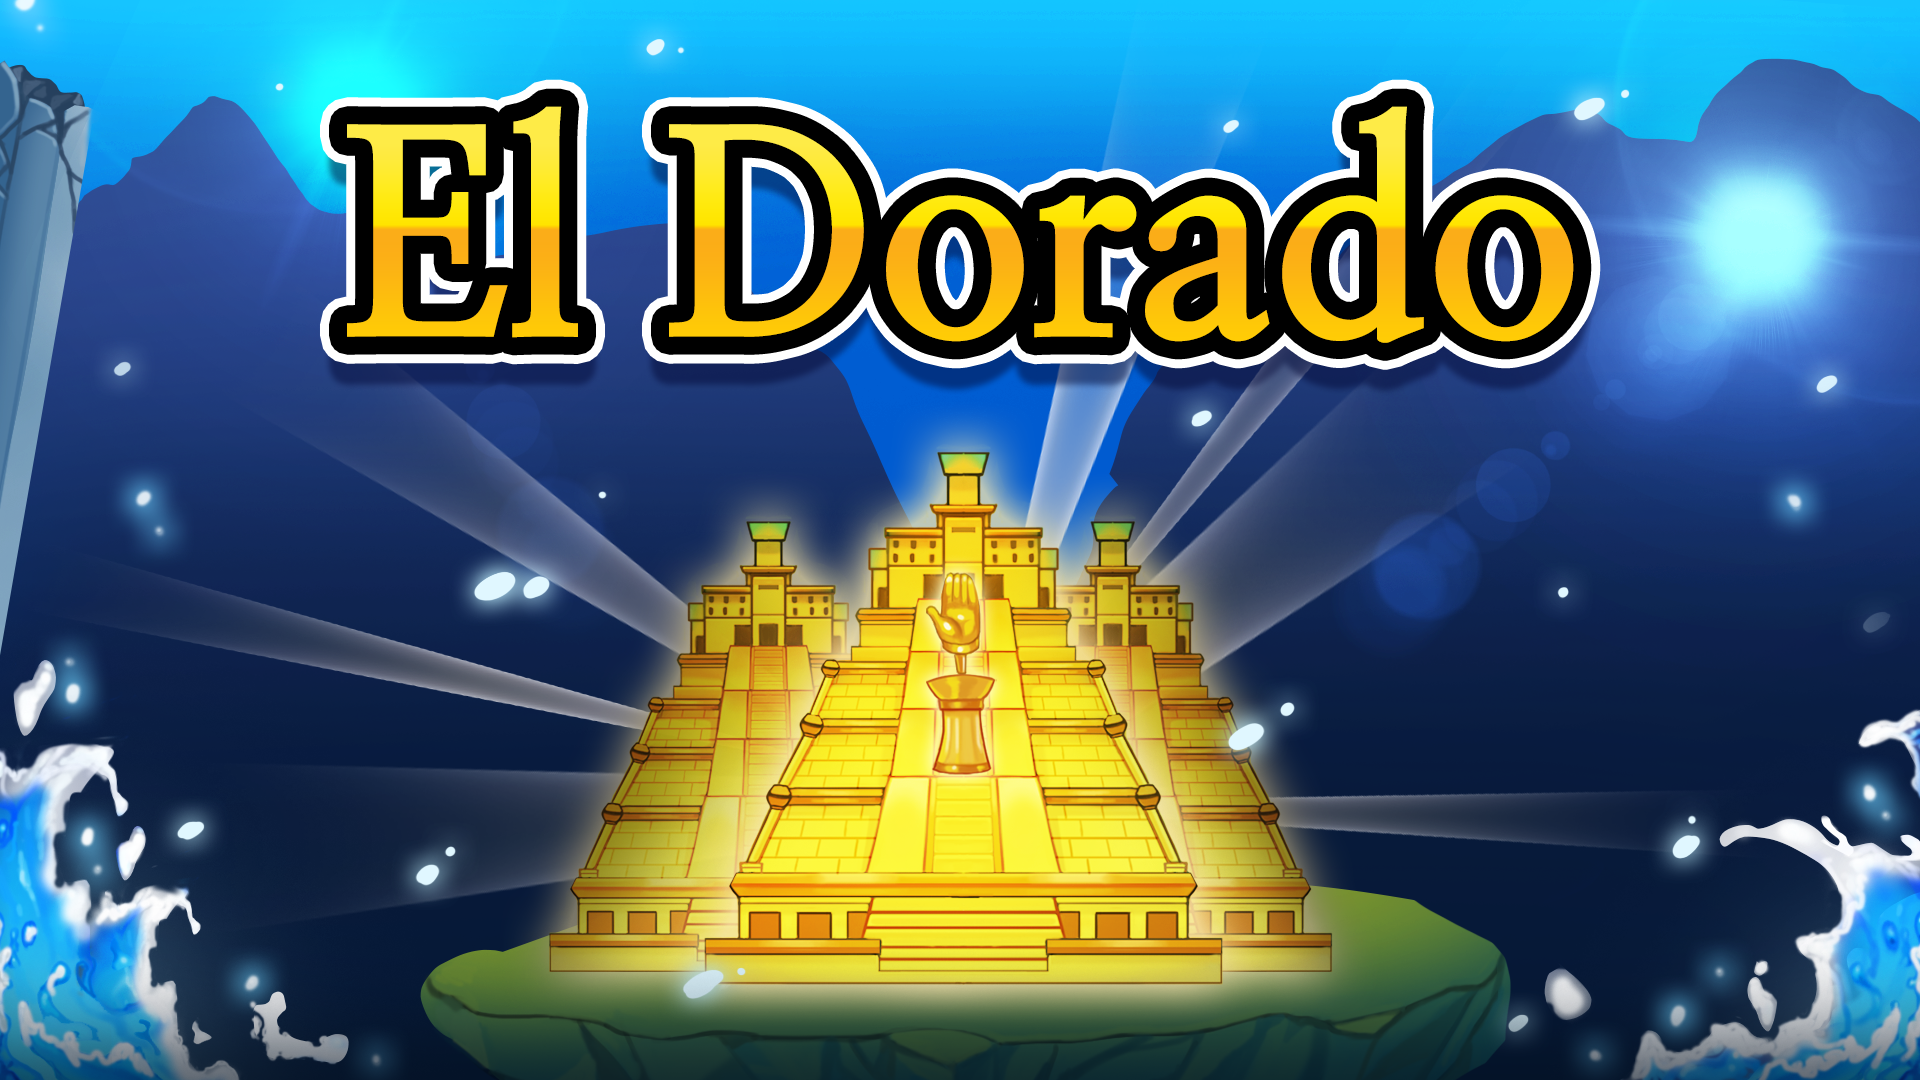 El Dorado Lite Game Image